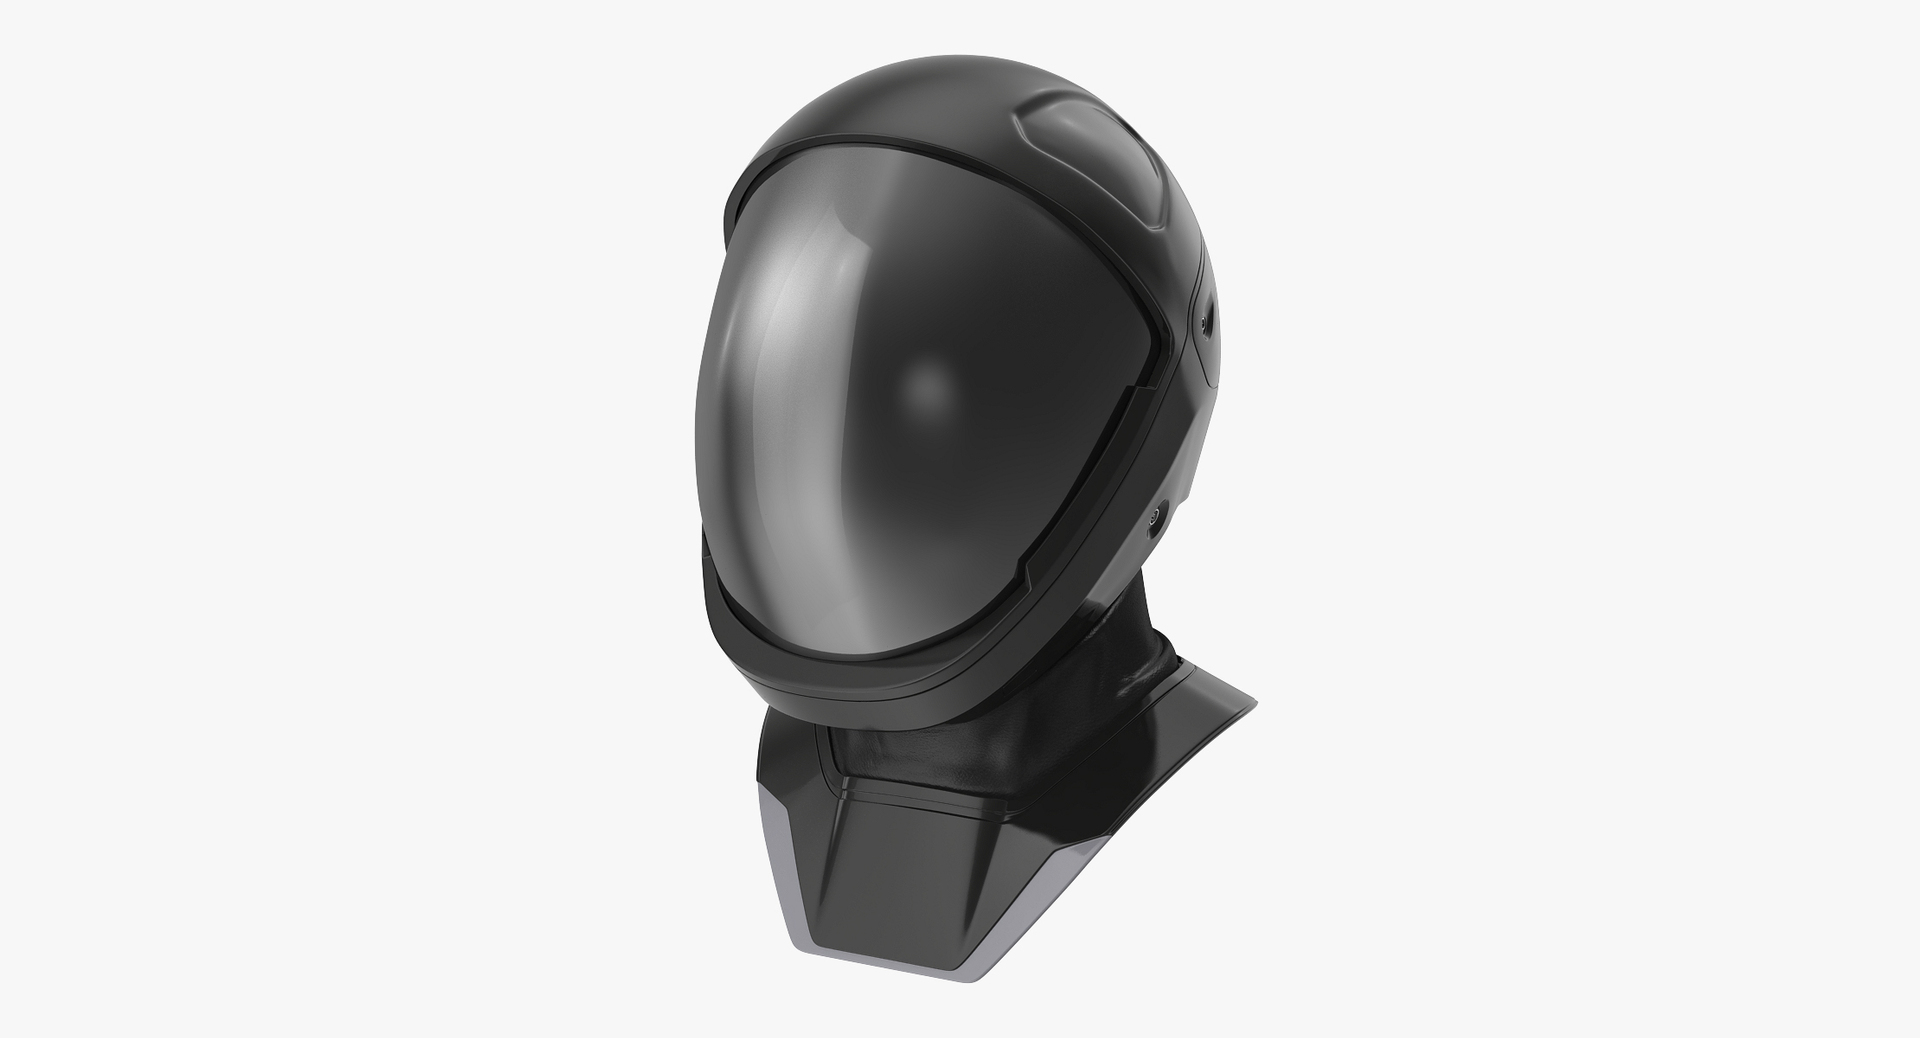 futuristic space helmet